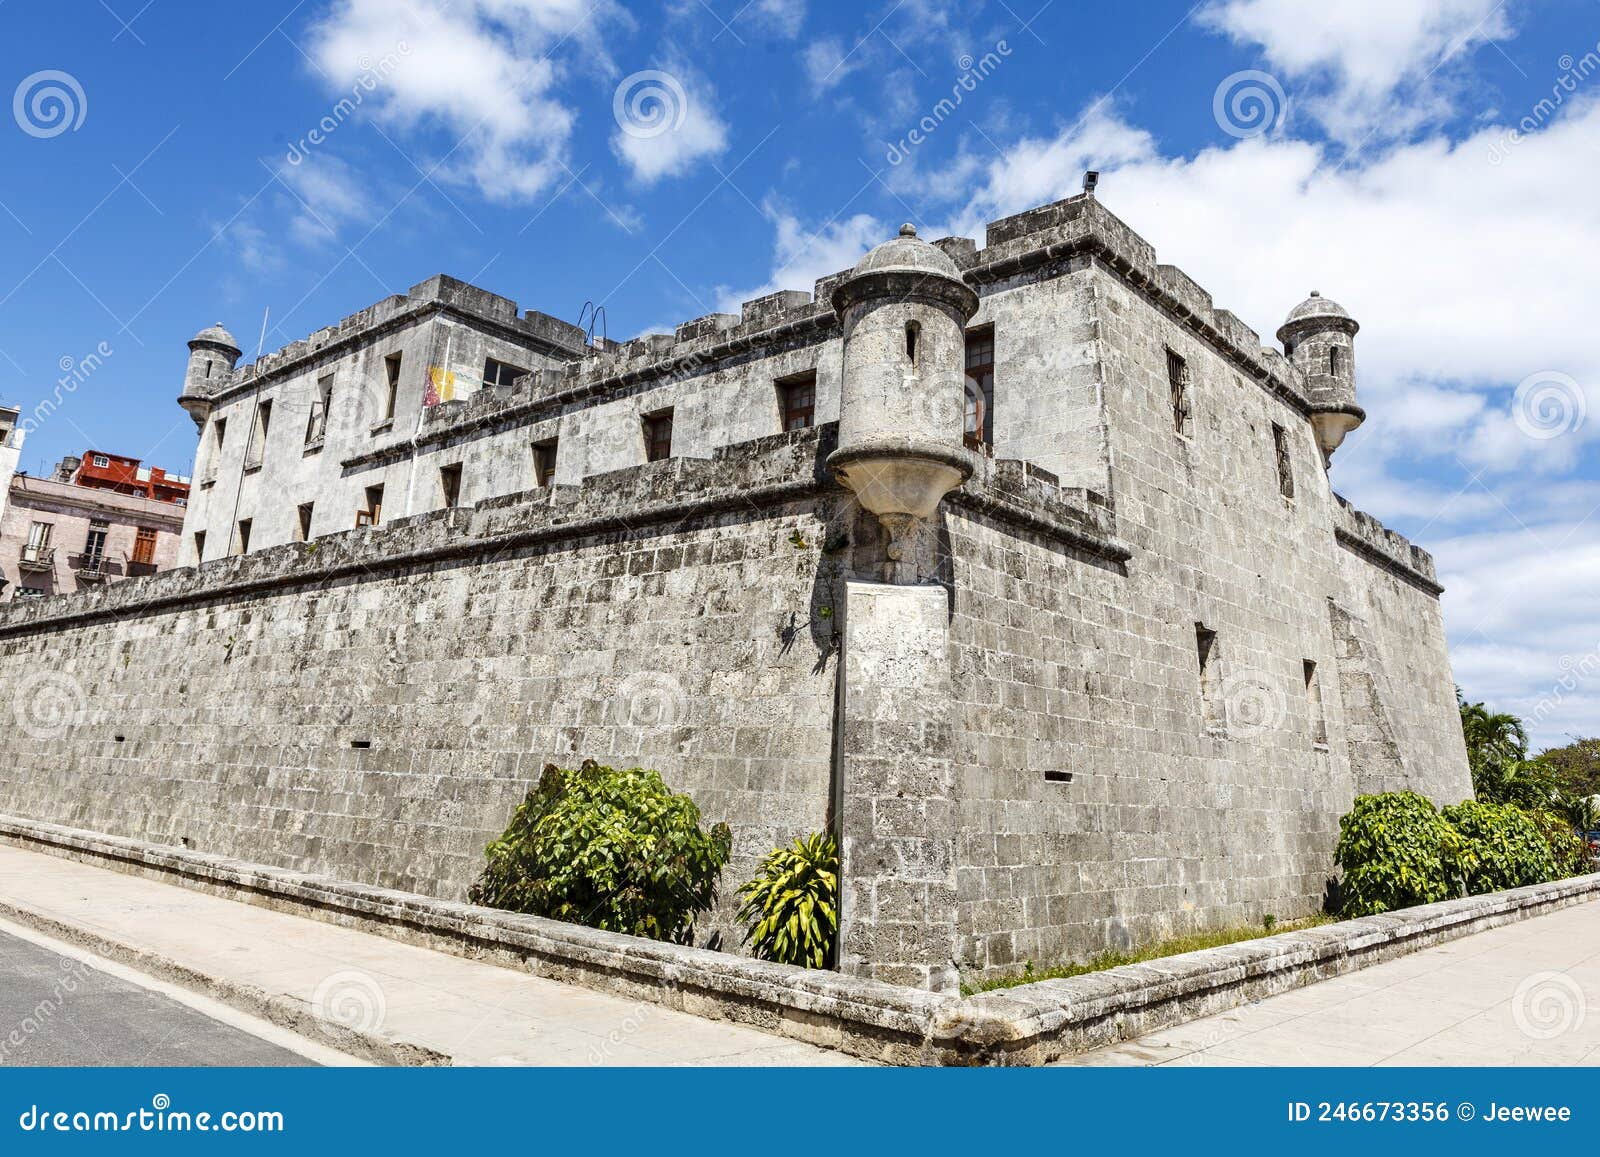 exterior of the castillo de la real fuerza fortress museum in havana, cuba, caribbean